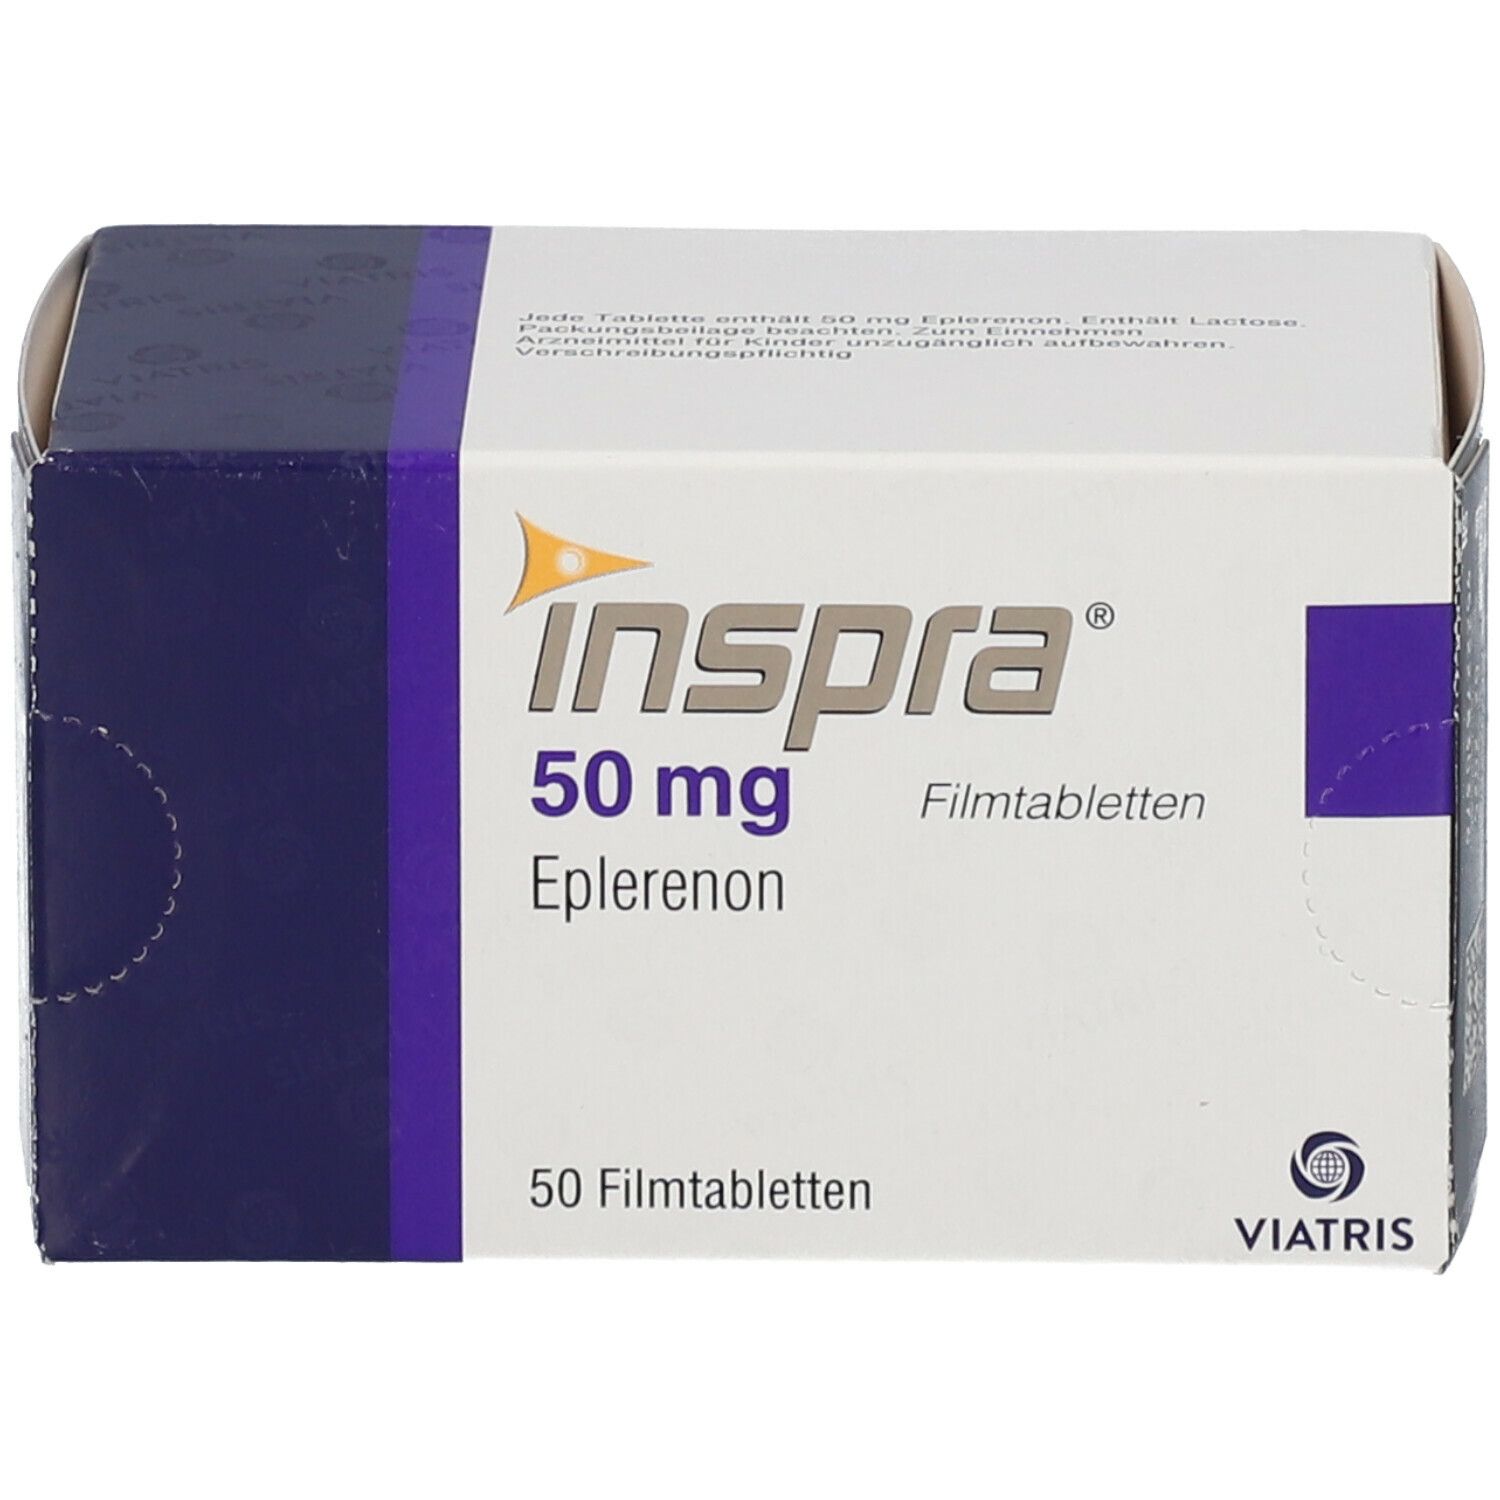 Inspra® 50 mg